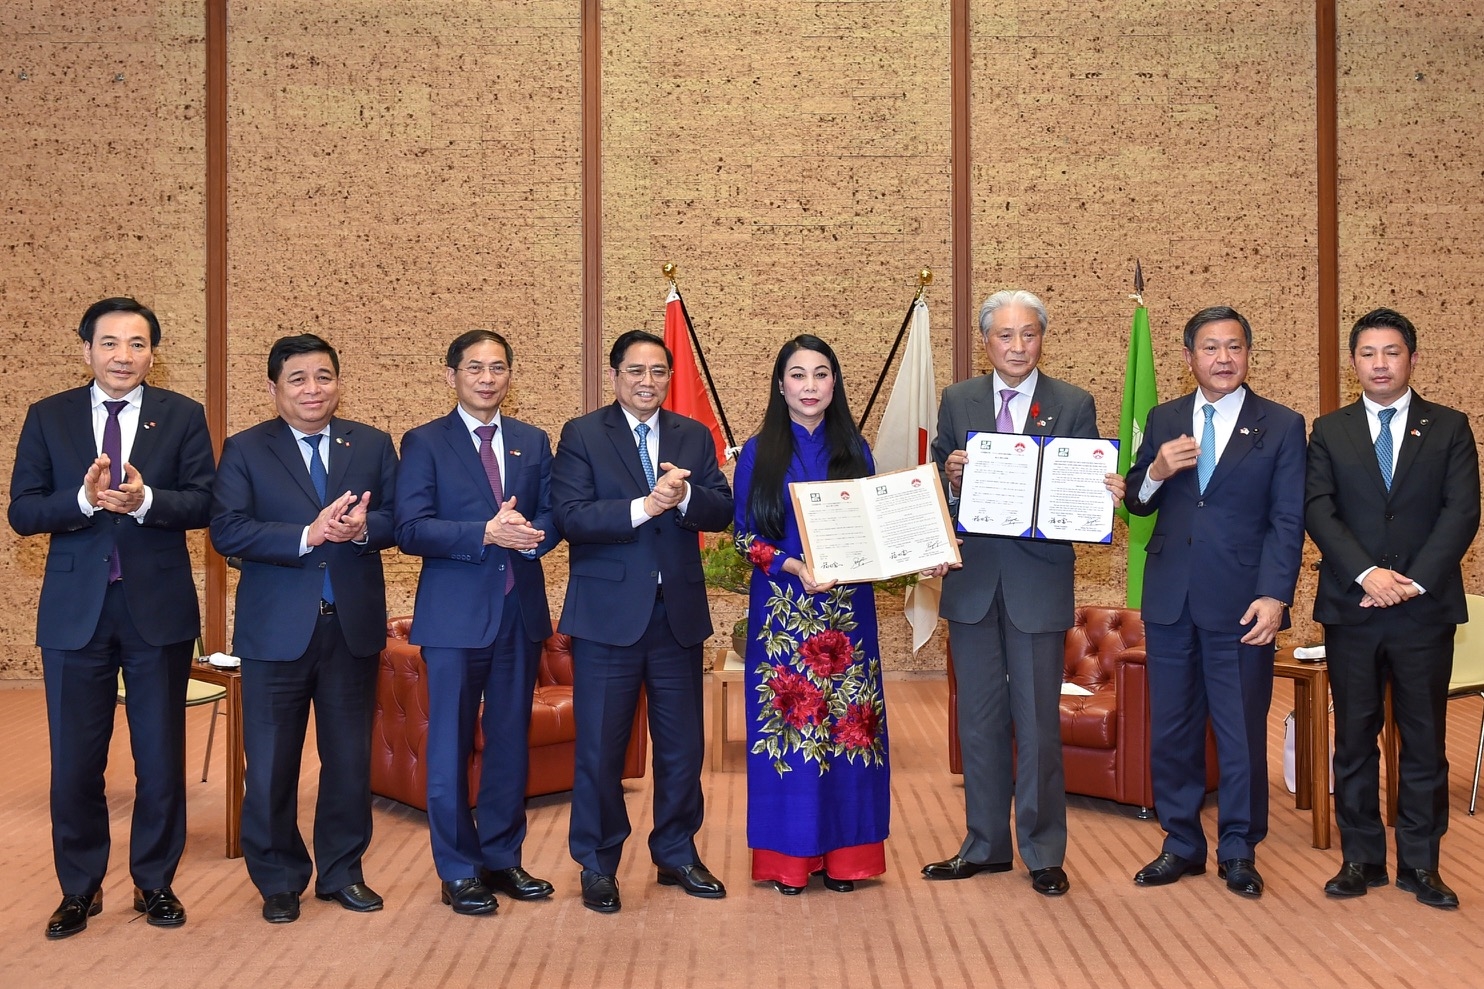 Thủ tướng chứng kiến lễ trao thỏa thuận hợp tác hữu nghị giữa tỉnh Vĩnh Phúc Việt Nam và tỉnh Tochigi Nhật Bản. Ảnh: VGP/Nhật Bắc